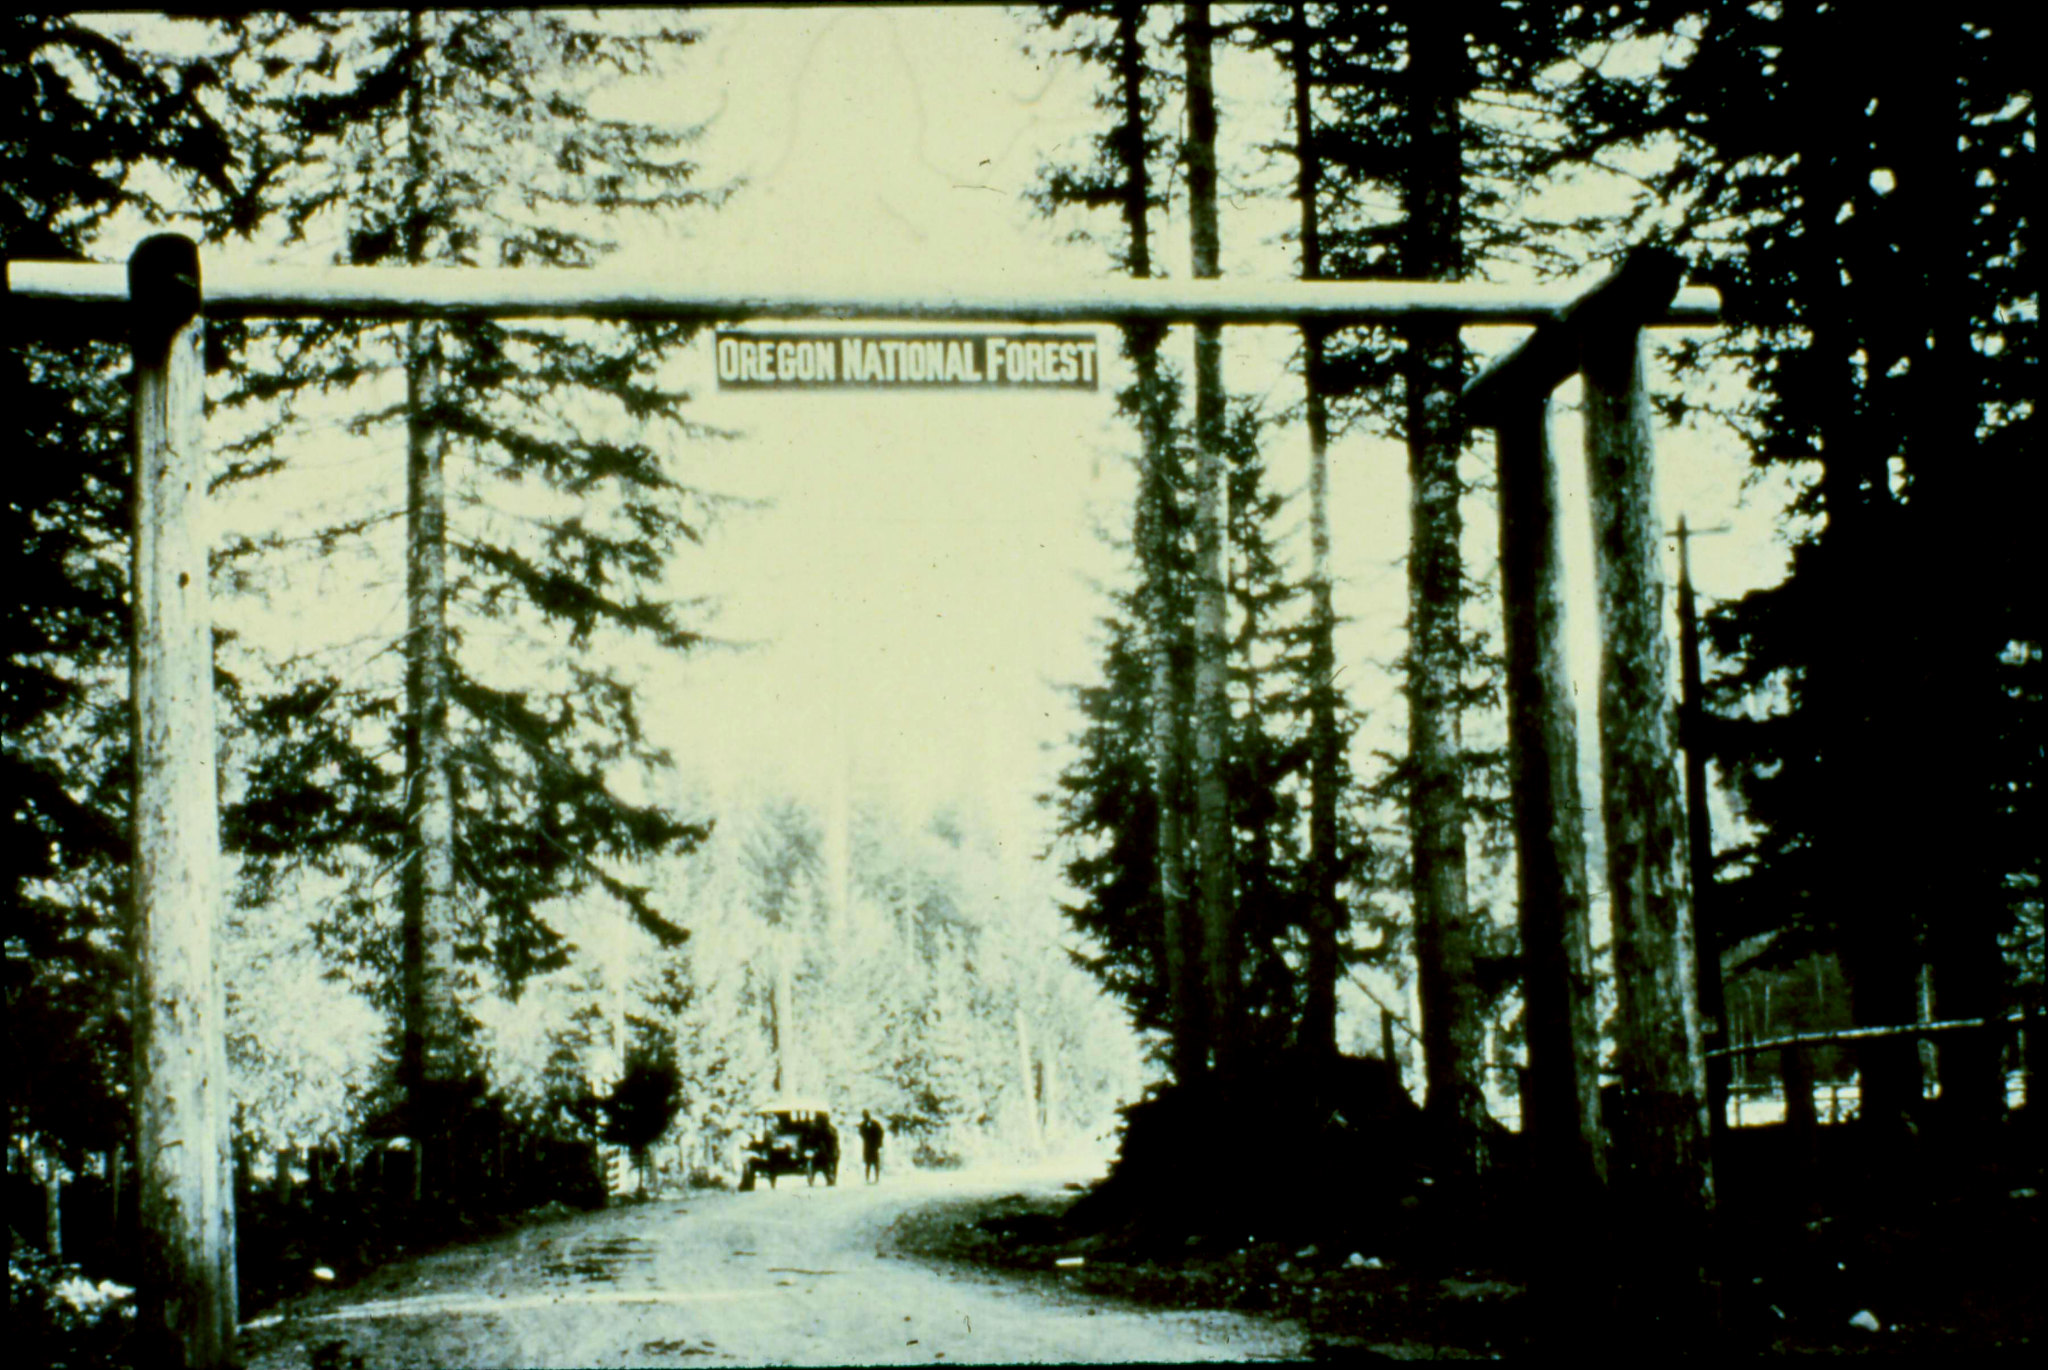 Oregon National Forest entrance sign